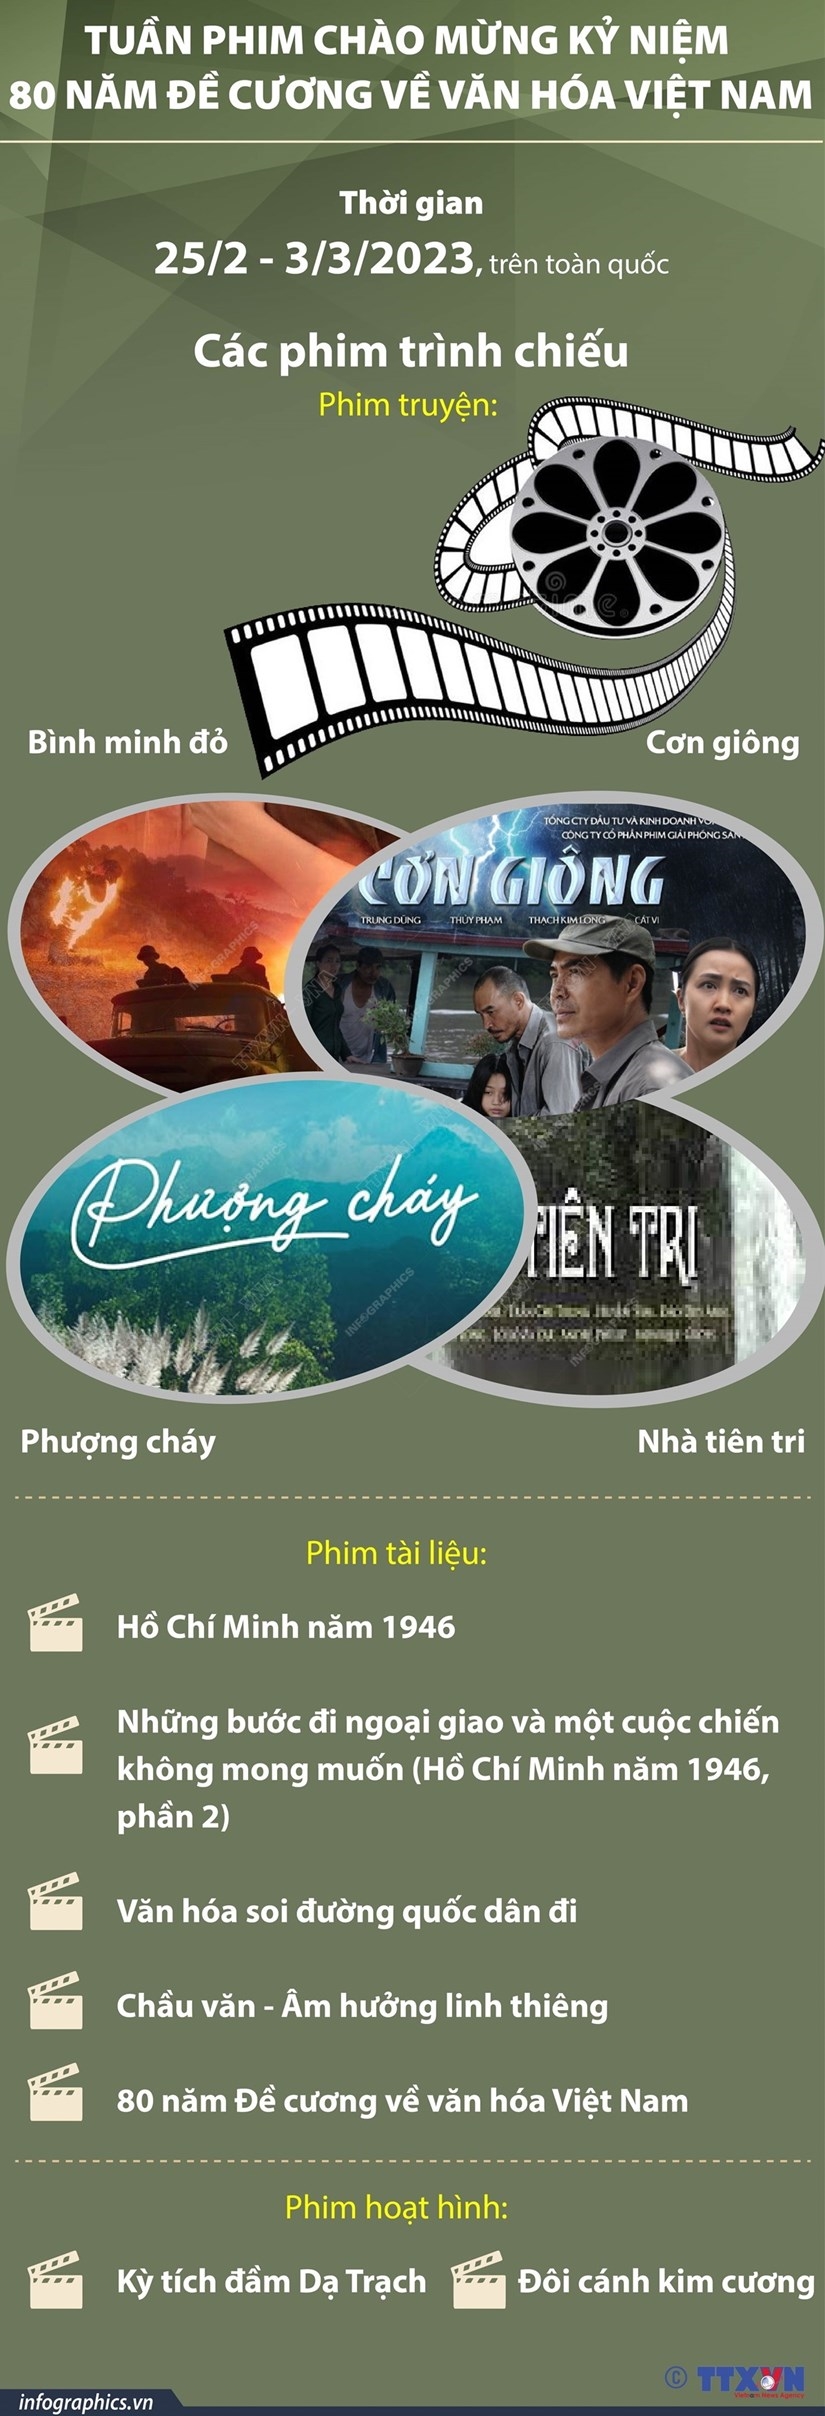 (DẪN NGUỒN) Nhiều hoạt động chào mừng 80 năm đề cương văn hóa Việt Nam 3